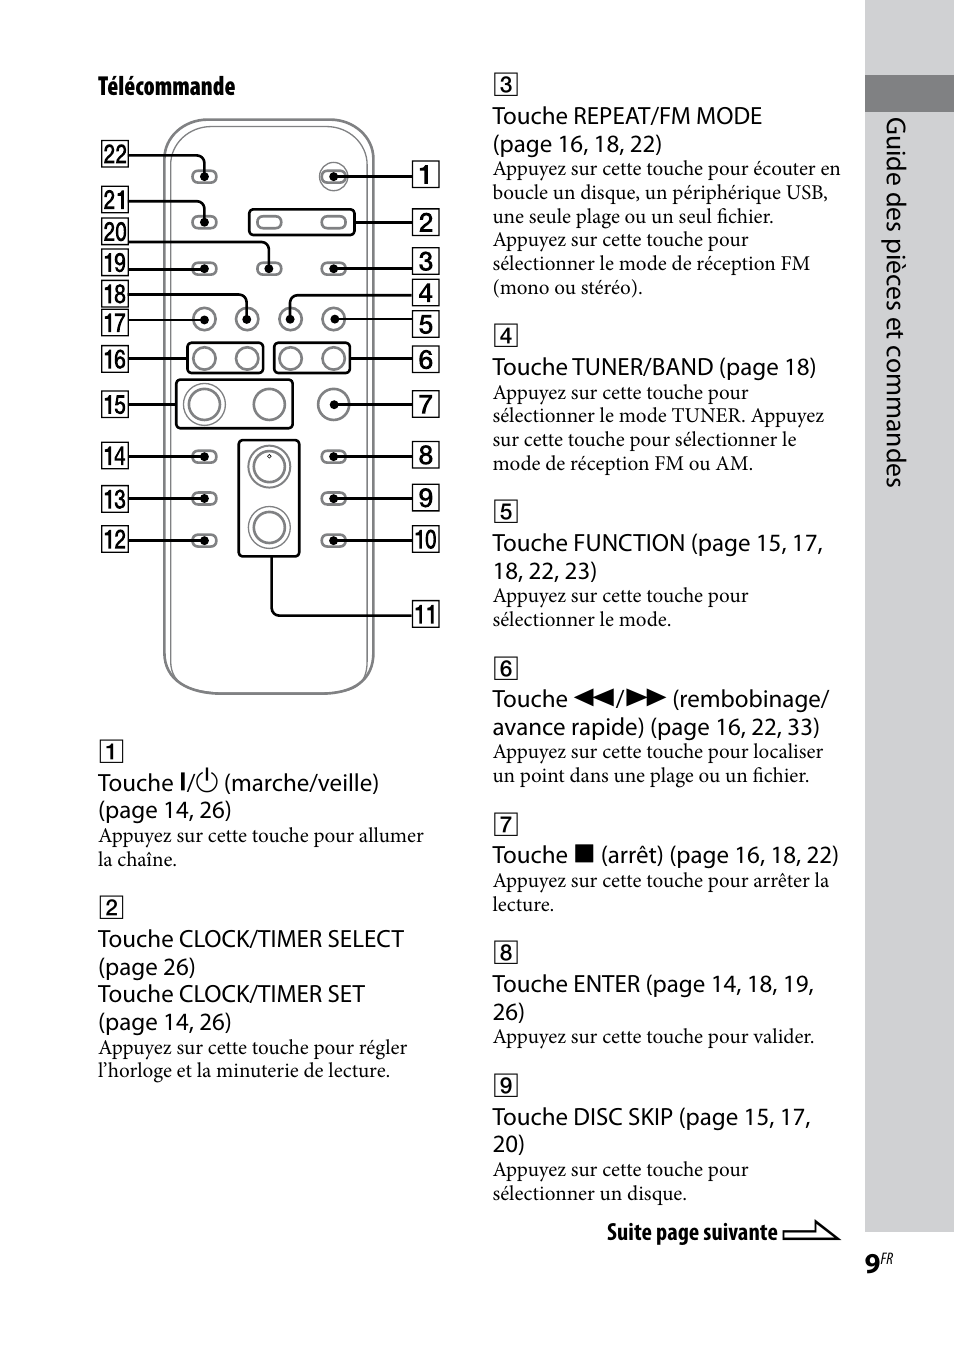 Guide des pièc es et c ommandes télécommande | Sony MHC-EC69 Manuel d'utilisation | Page 9 / 44